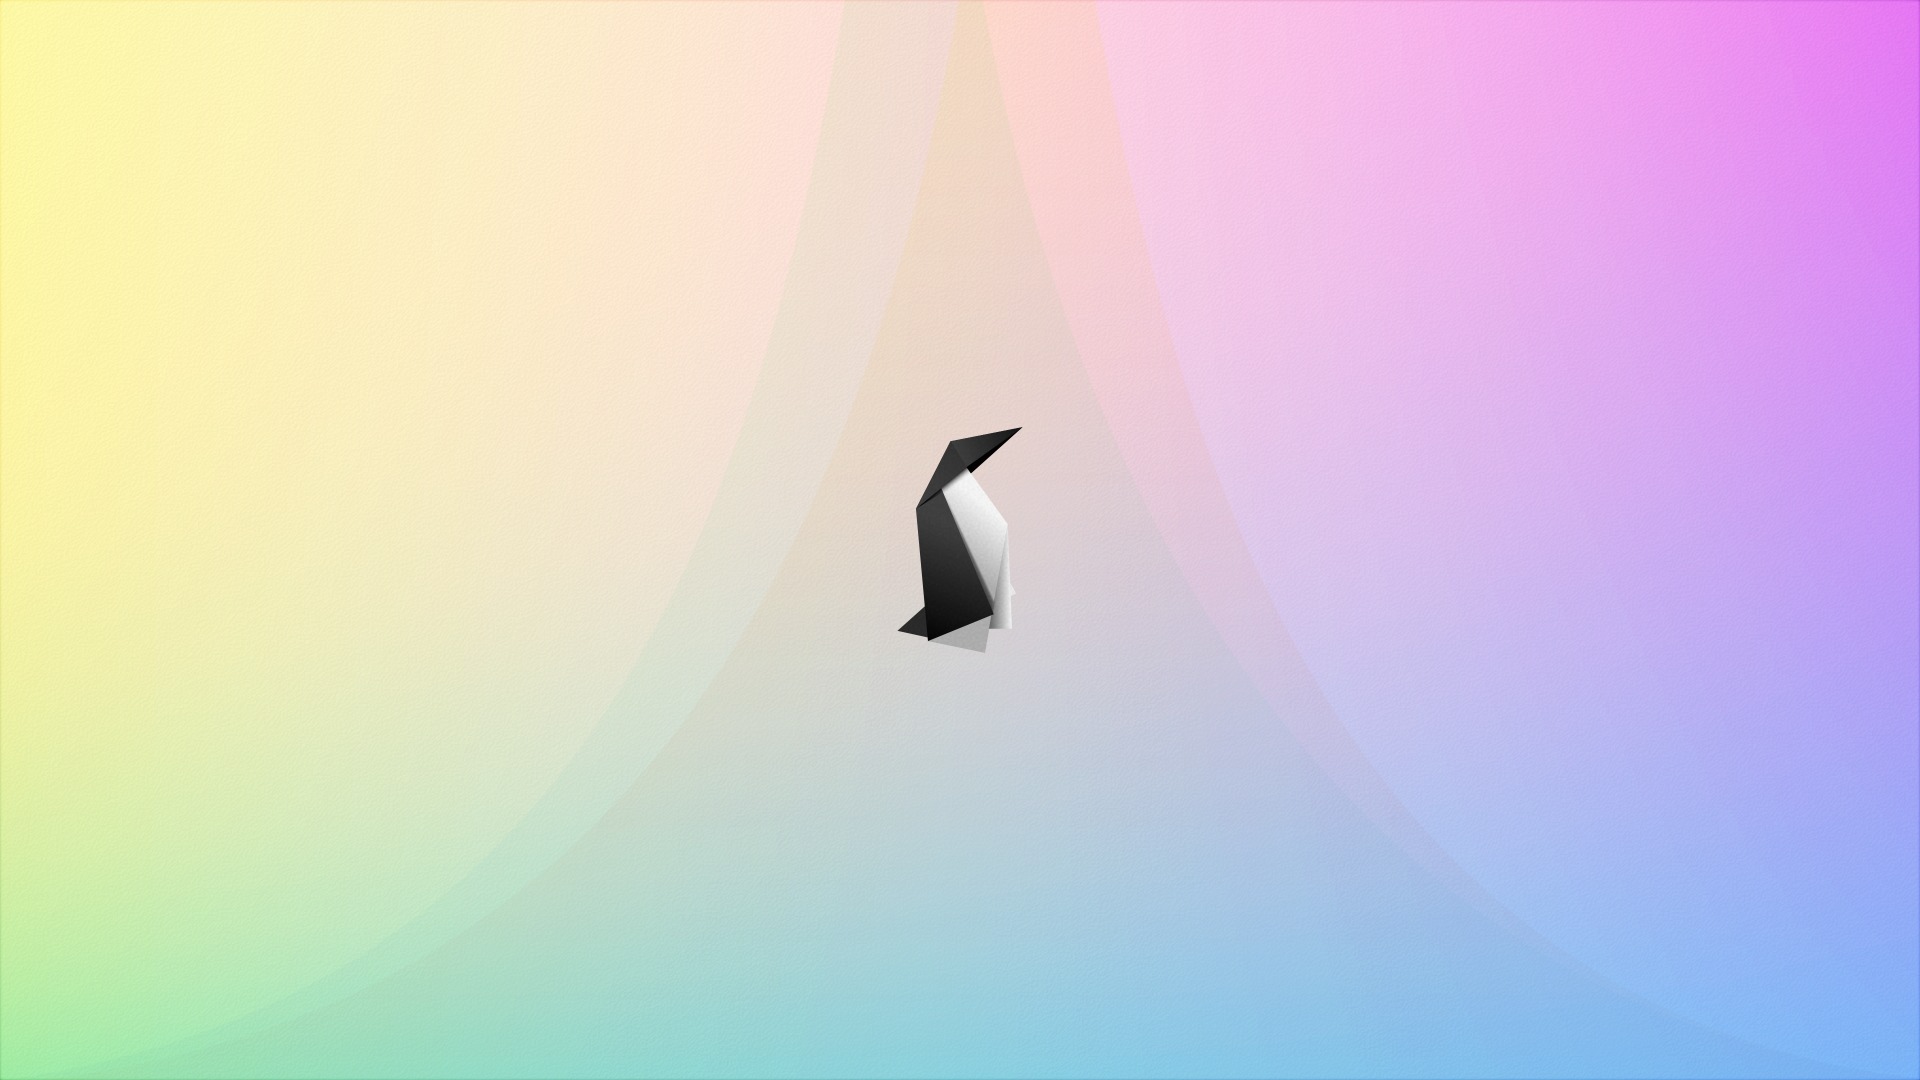 Score 50% - Seabird , HD Wallpaper & Backgrounds